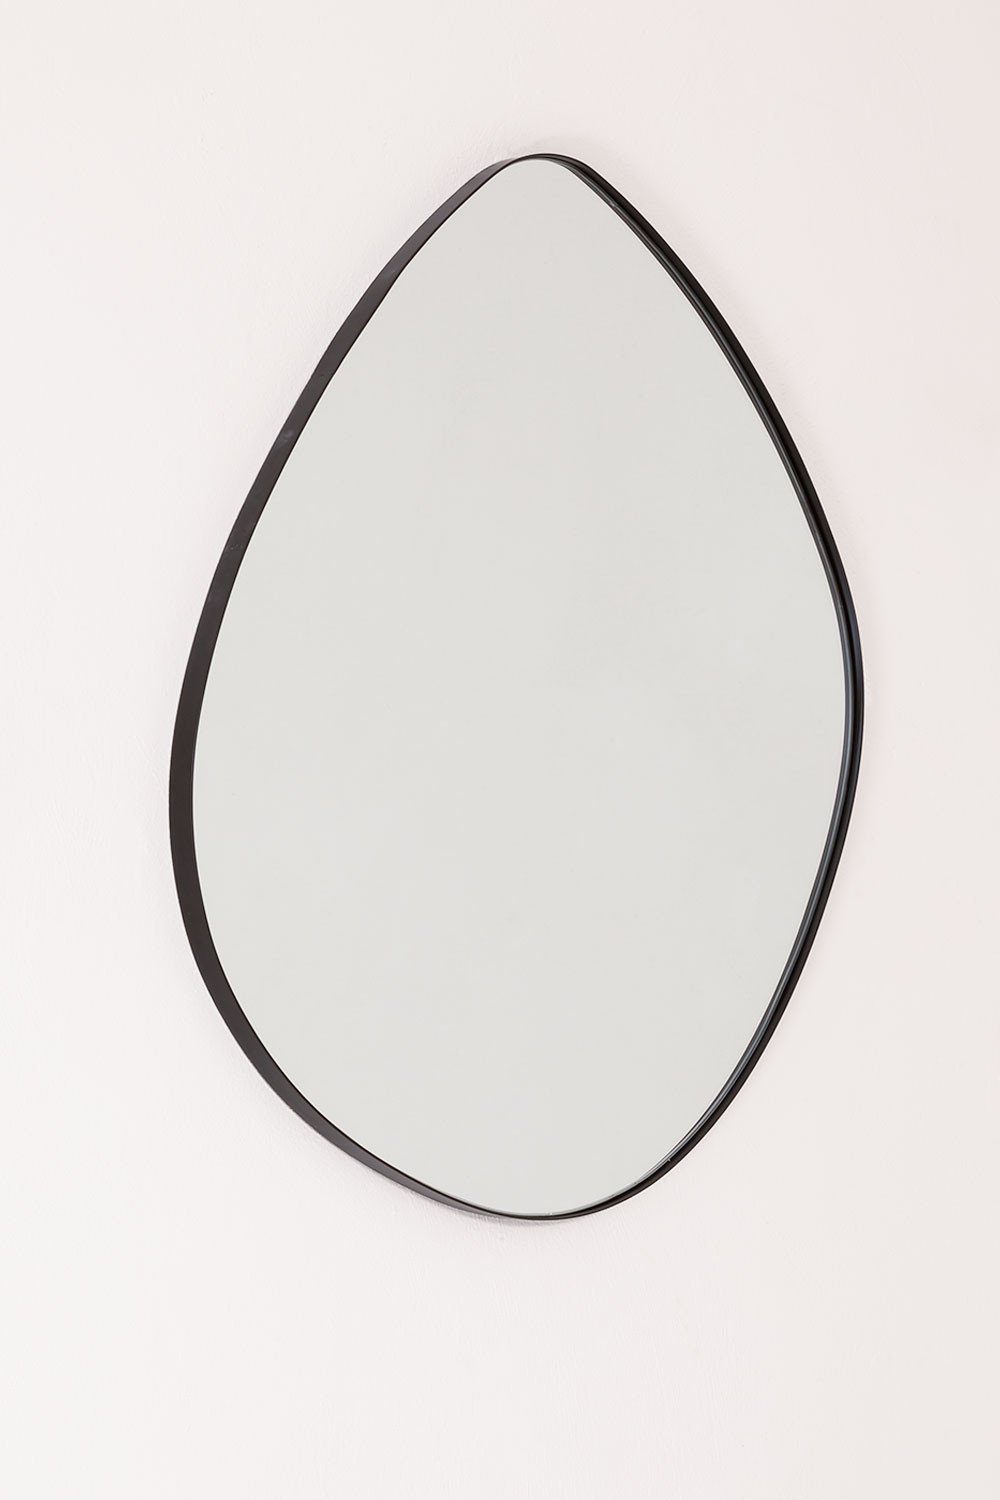 Specchio da parete in metallo (67x60 cm) Astrid, immagine della galleria 2